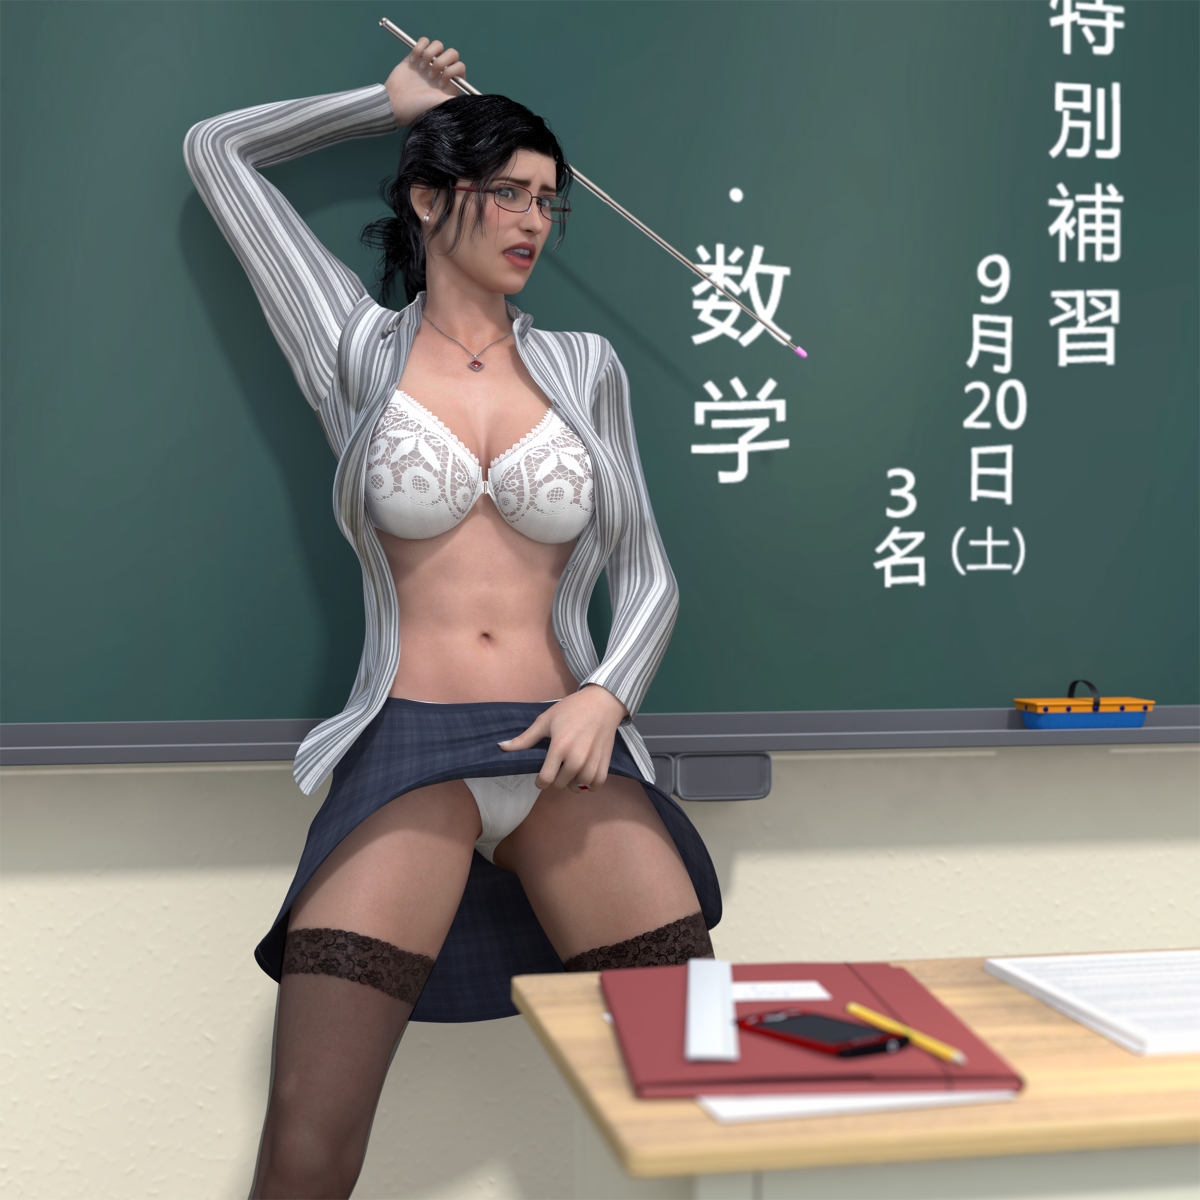 3d Teacher Porn - Hiromi Female Teacher 1 - Porn Cartoon Comics